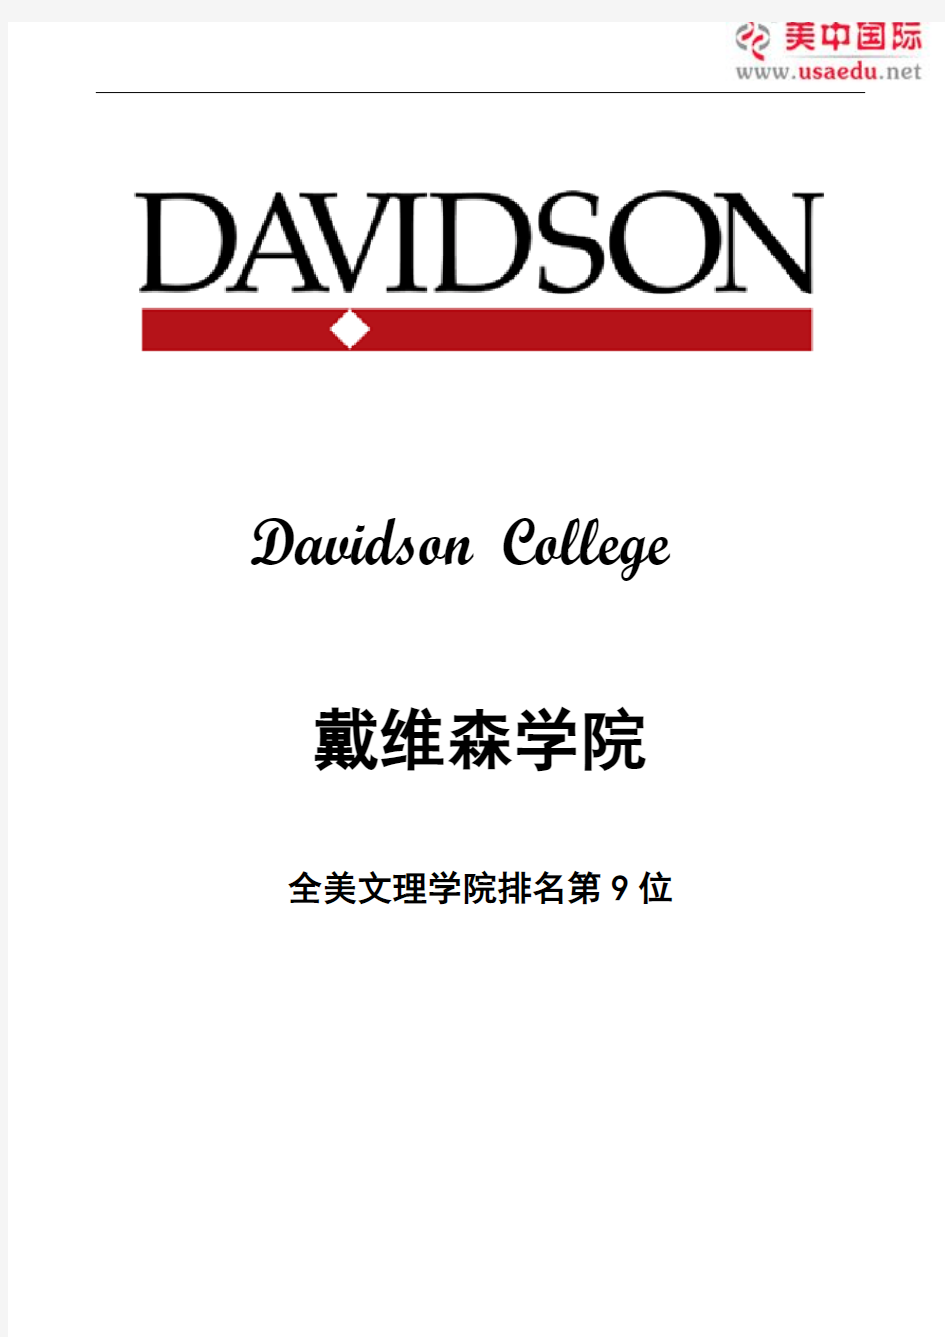 戴维森学院-全美文理学院排名第九